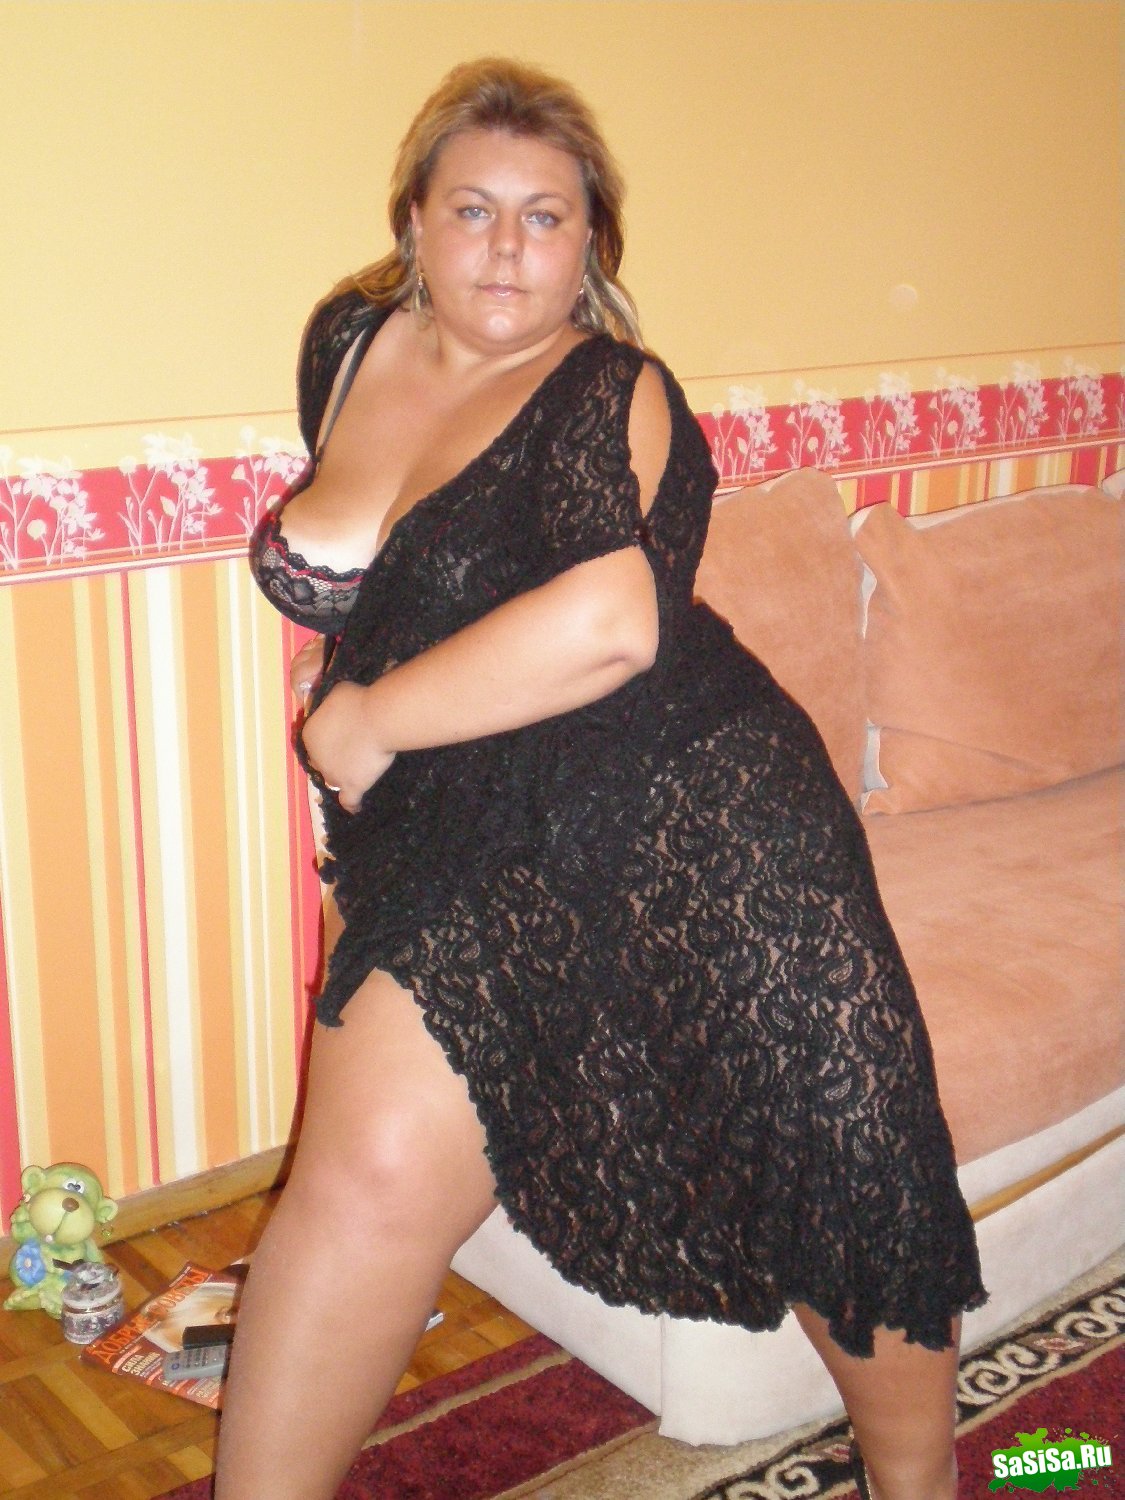 Зрелые толстые женщины фото